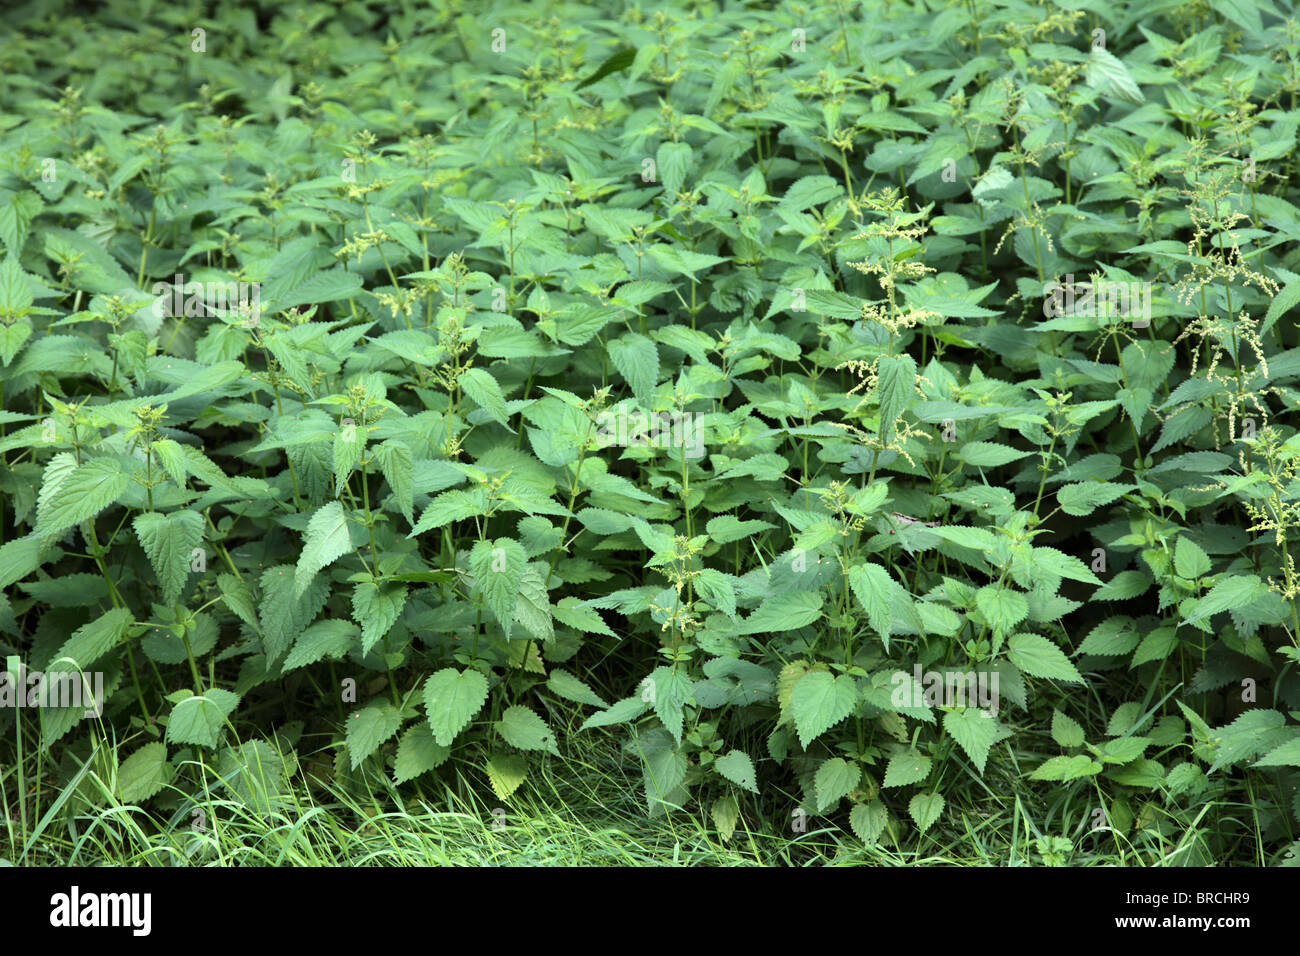 Dense vegetation of stinging nettle. Stock Photo